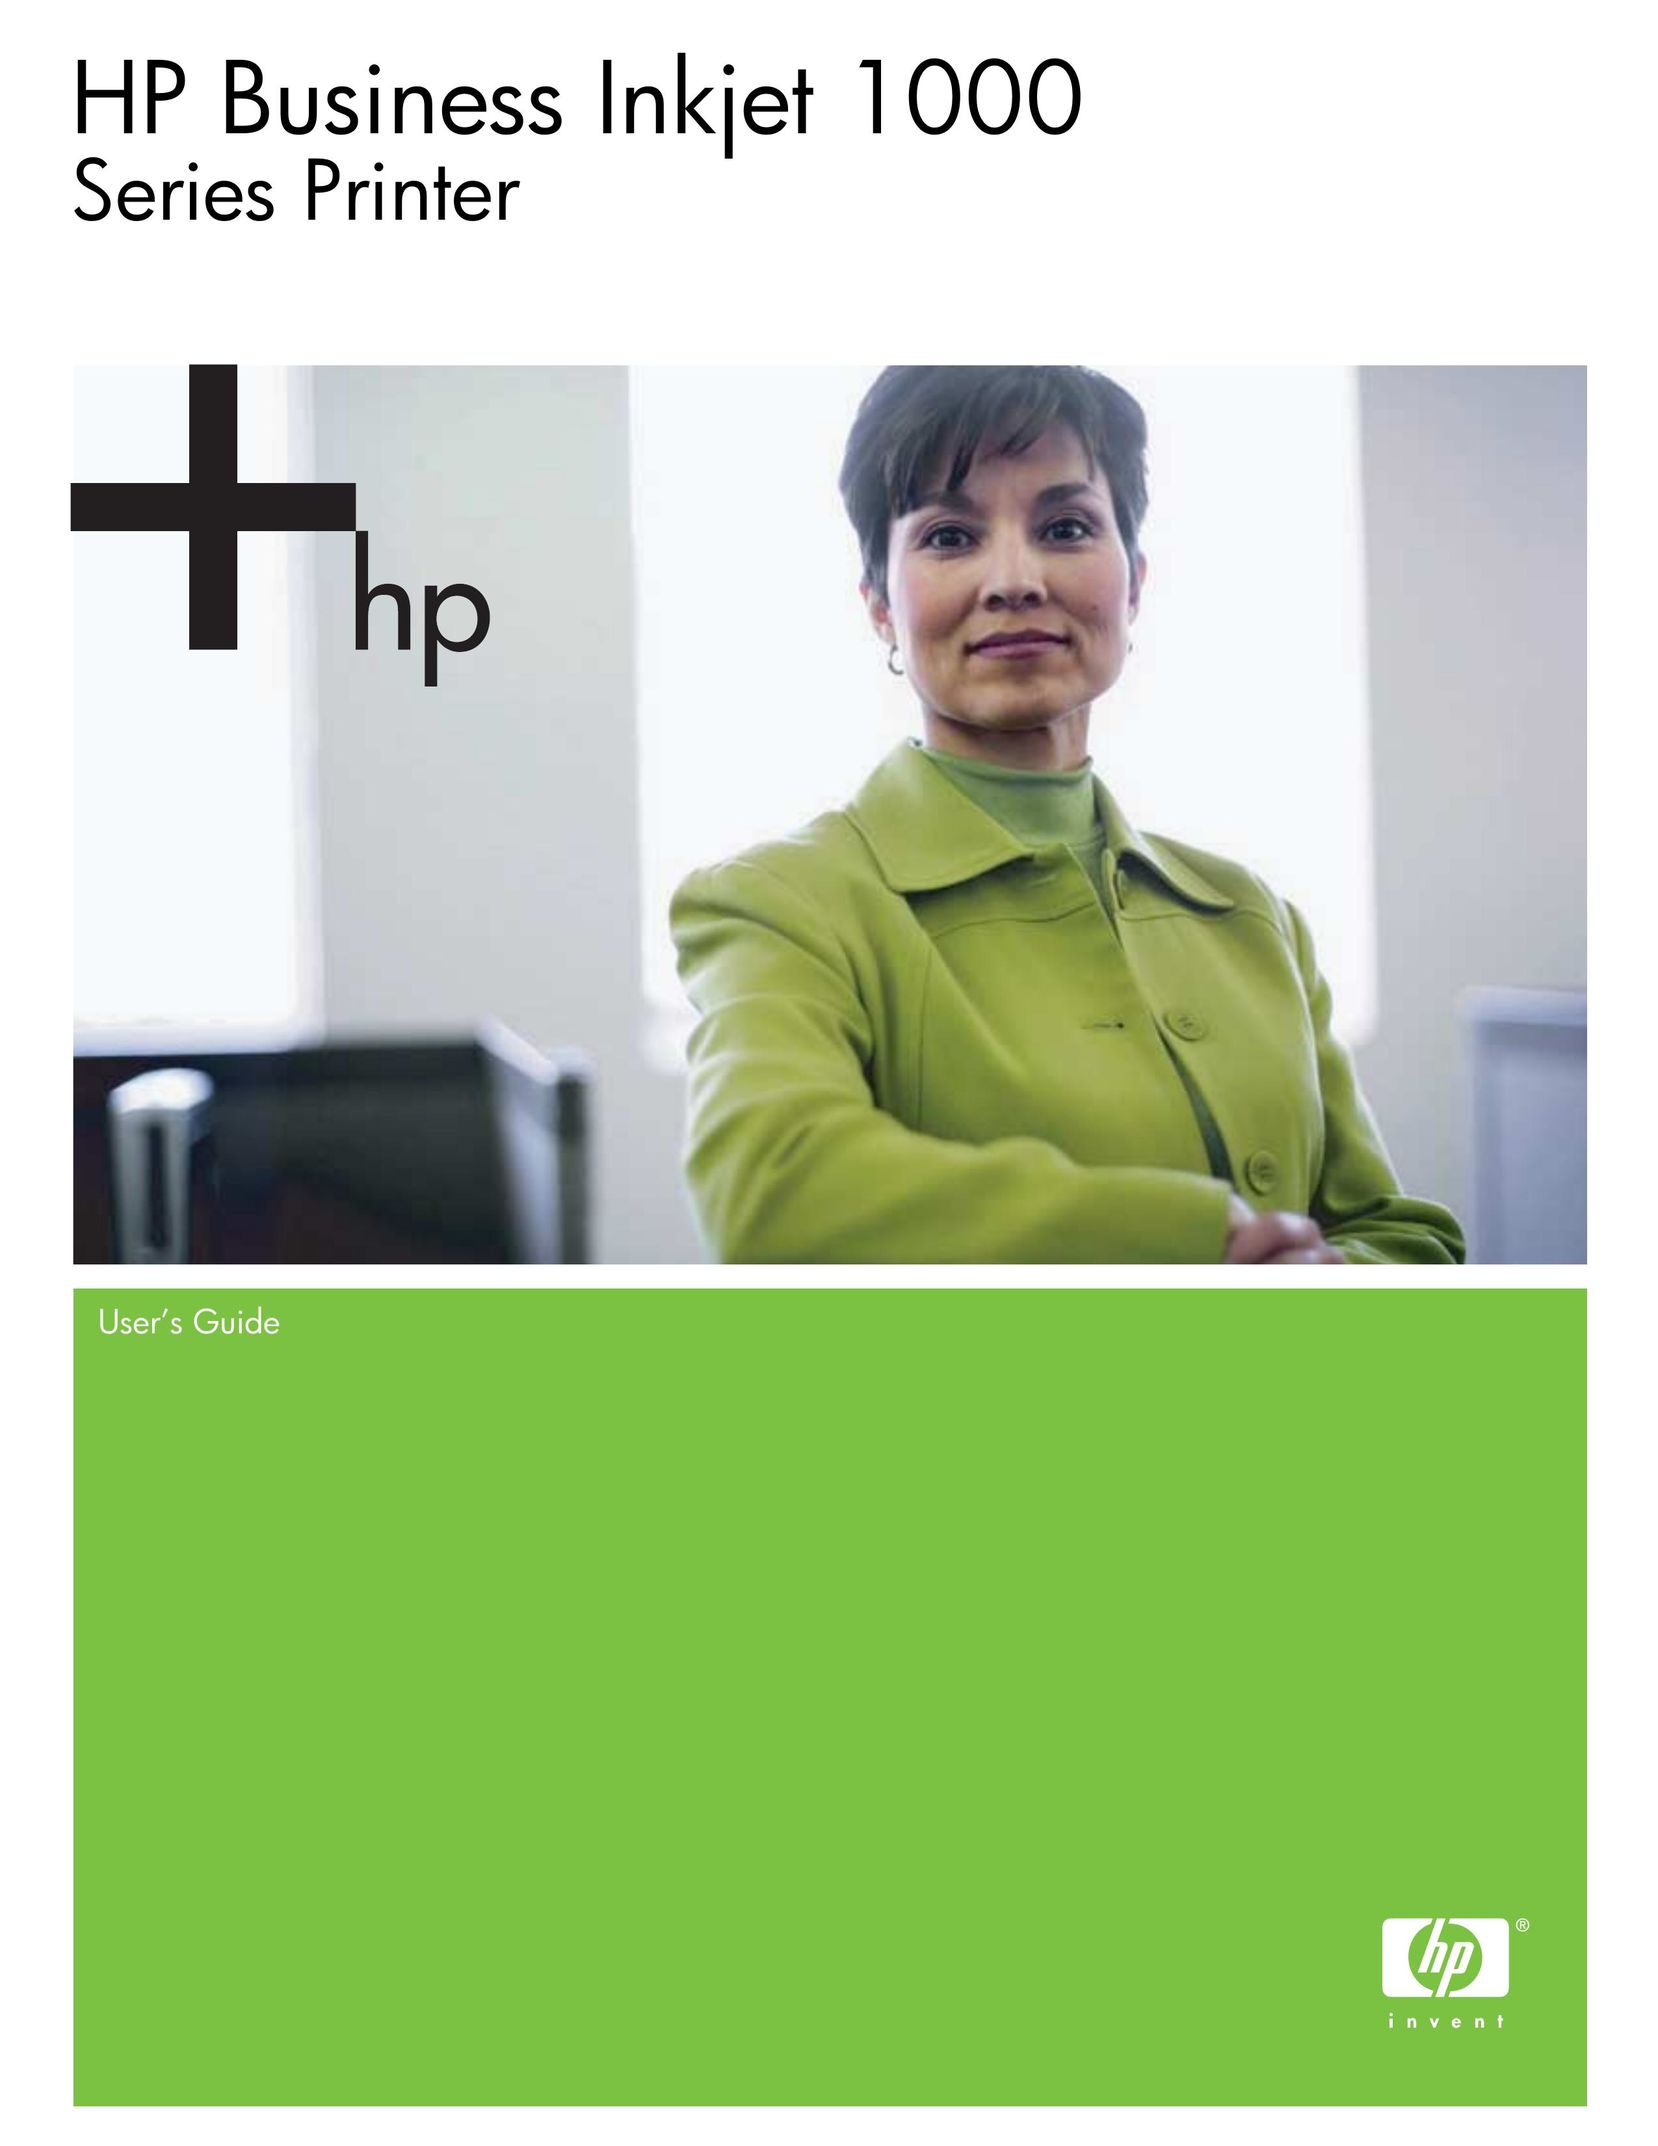 HP (Hewlett-Packard) 1000 Printer User Manual